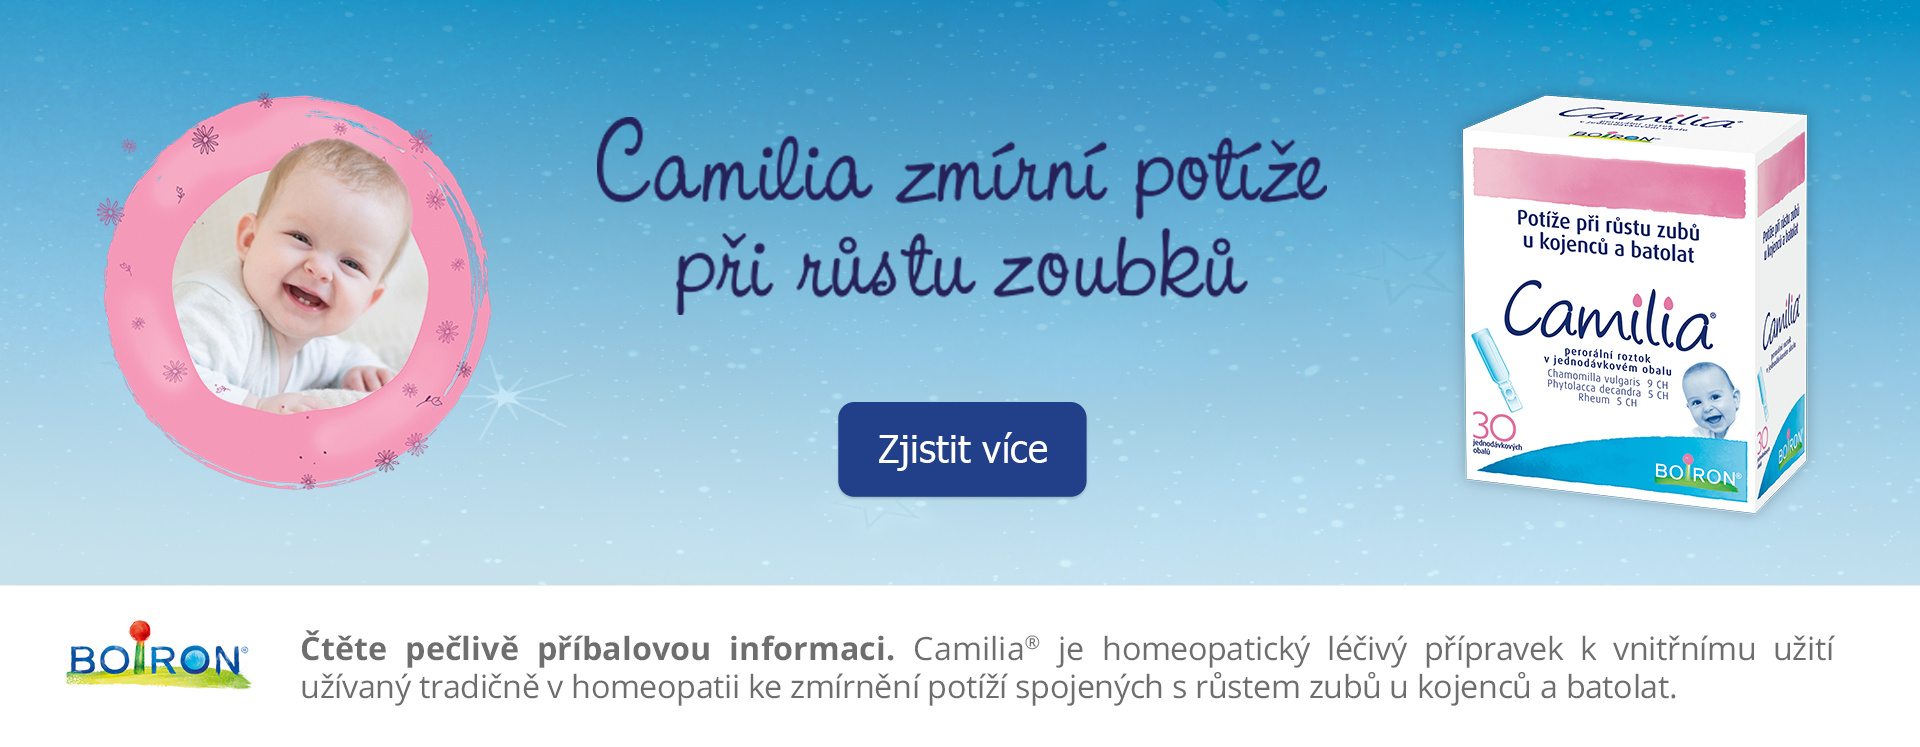 Onlinelekarna.cz | Camillia